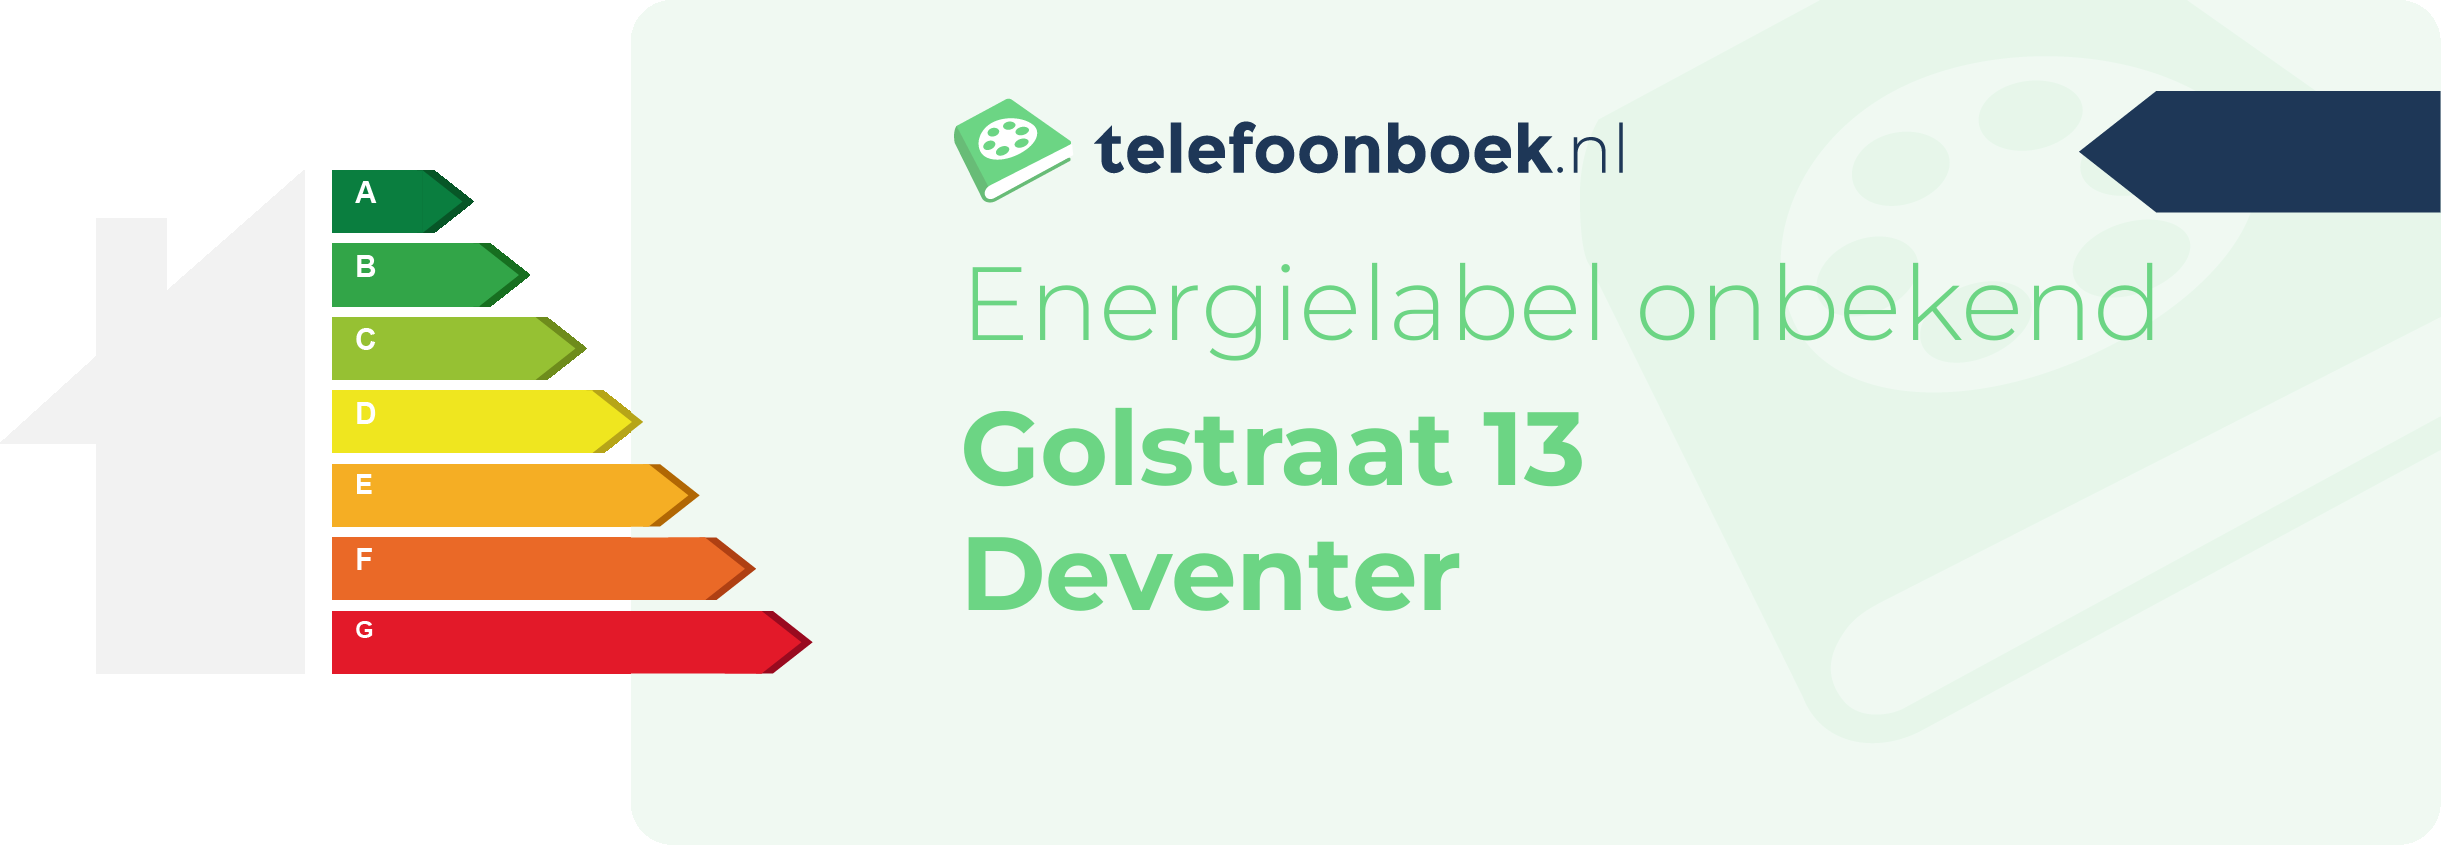 Energielabel Golstraat 13 Deventer